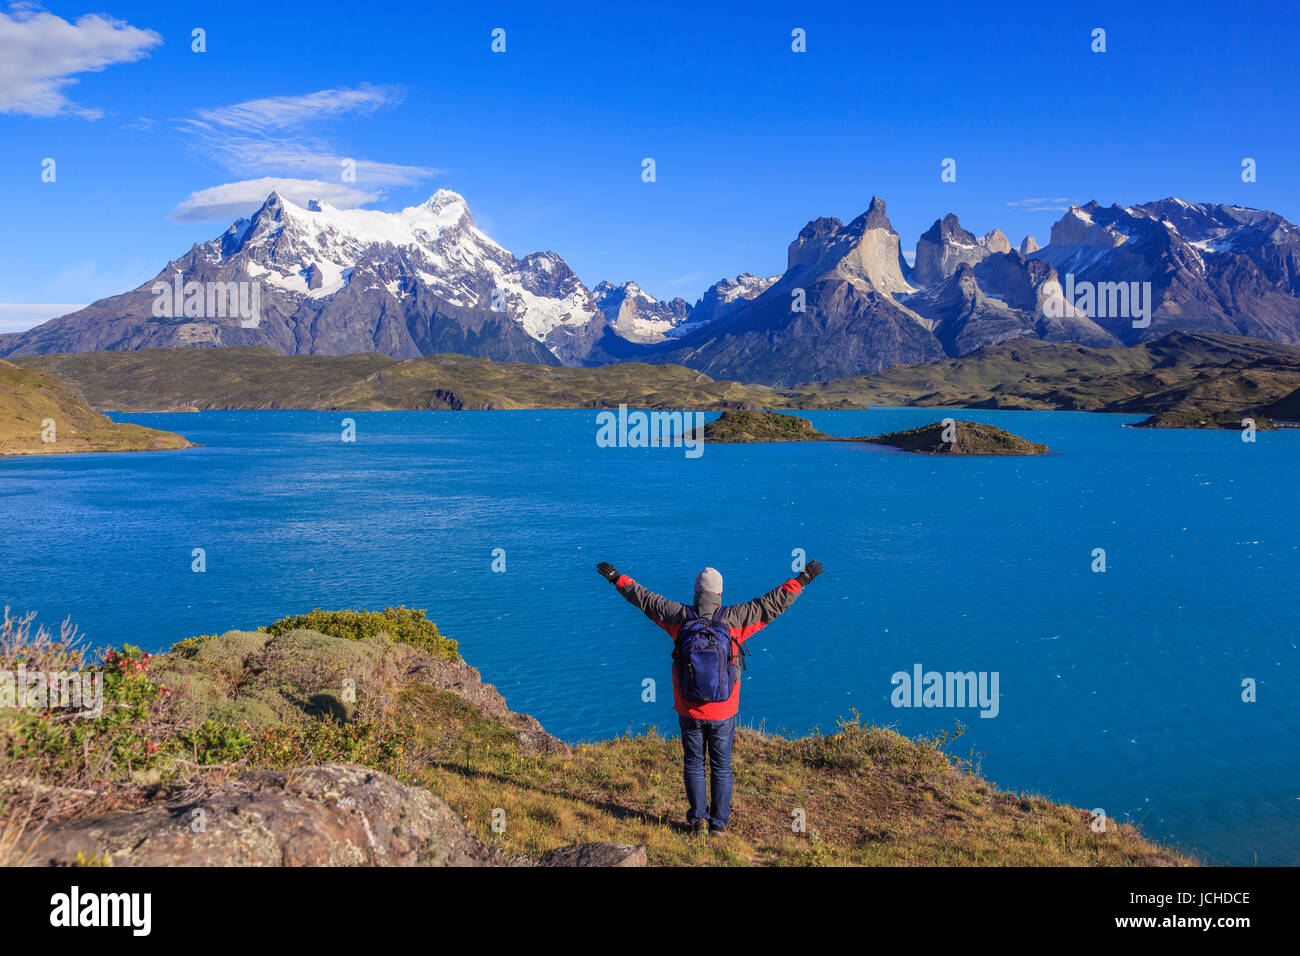 Nationalpark Torres del Paine ( Parque Nacional Torres del Paine) ist einer der bekanntesten Nationalparks in Patagonien, Cile Foto Stock